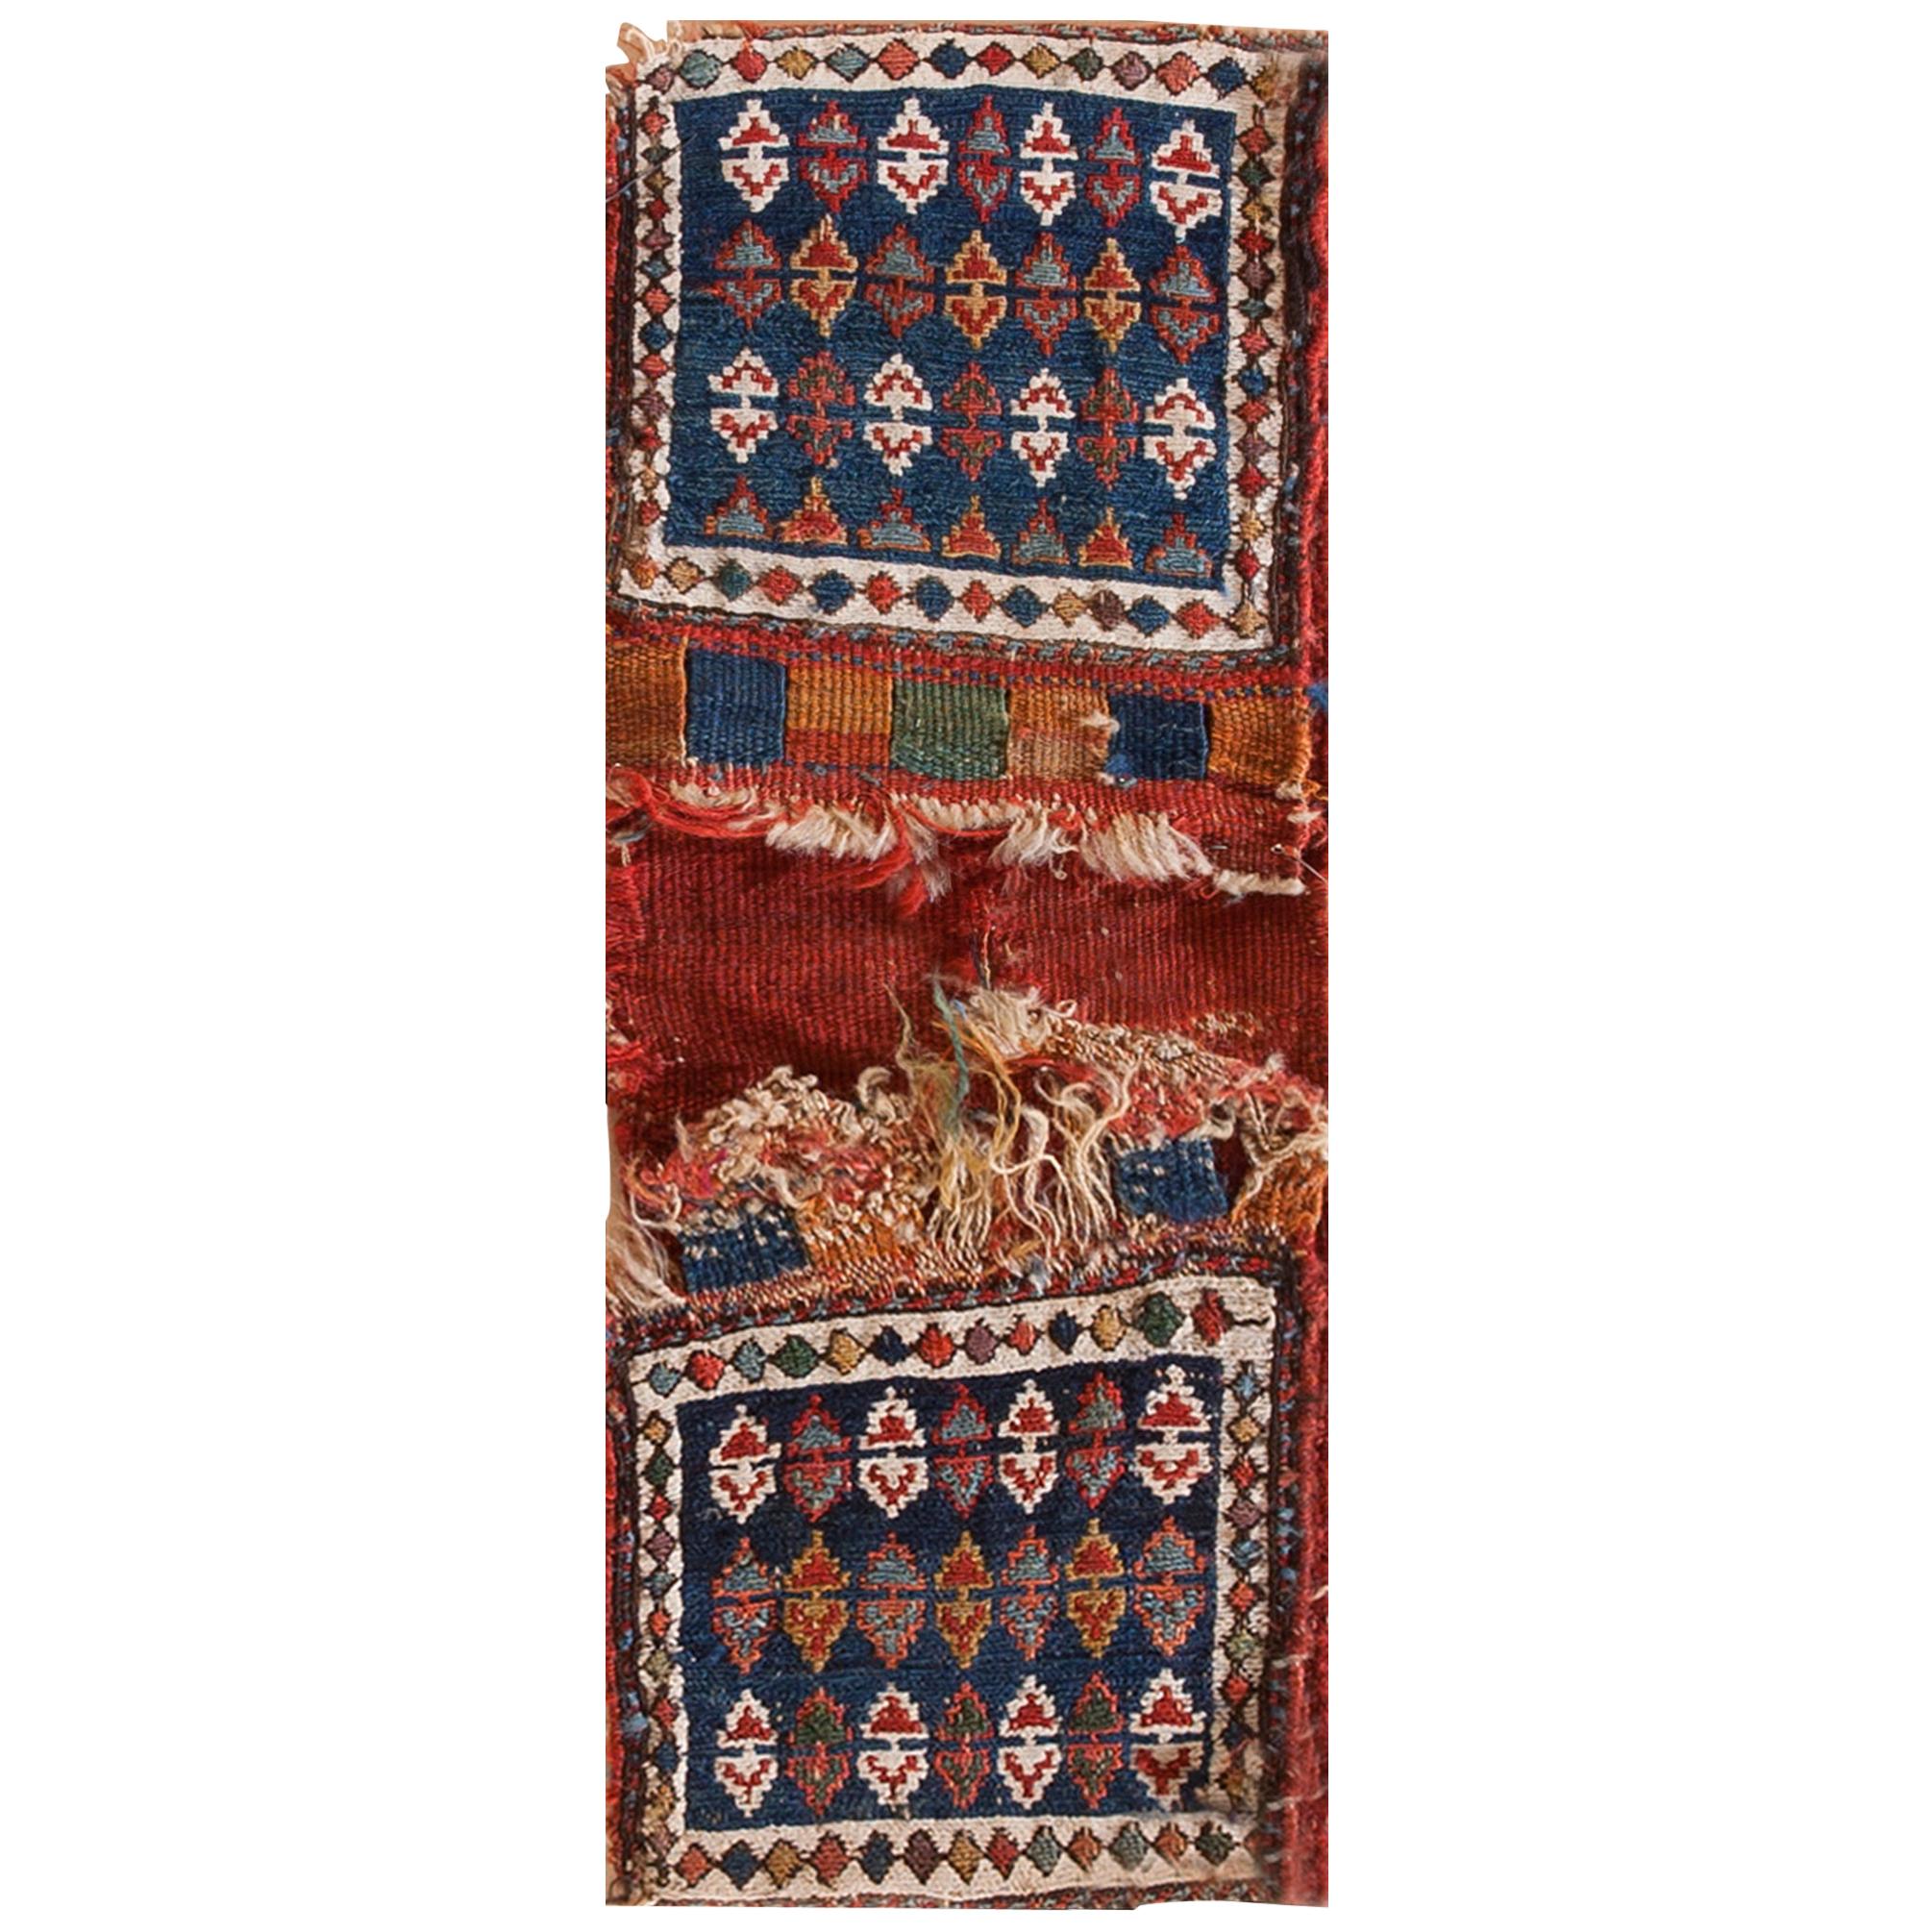 Antique Persian, Soumak Rug